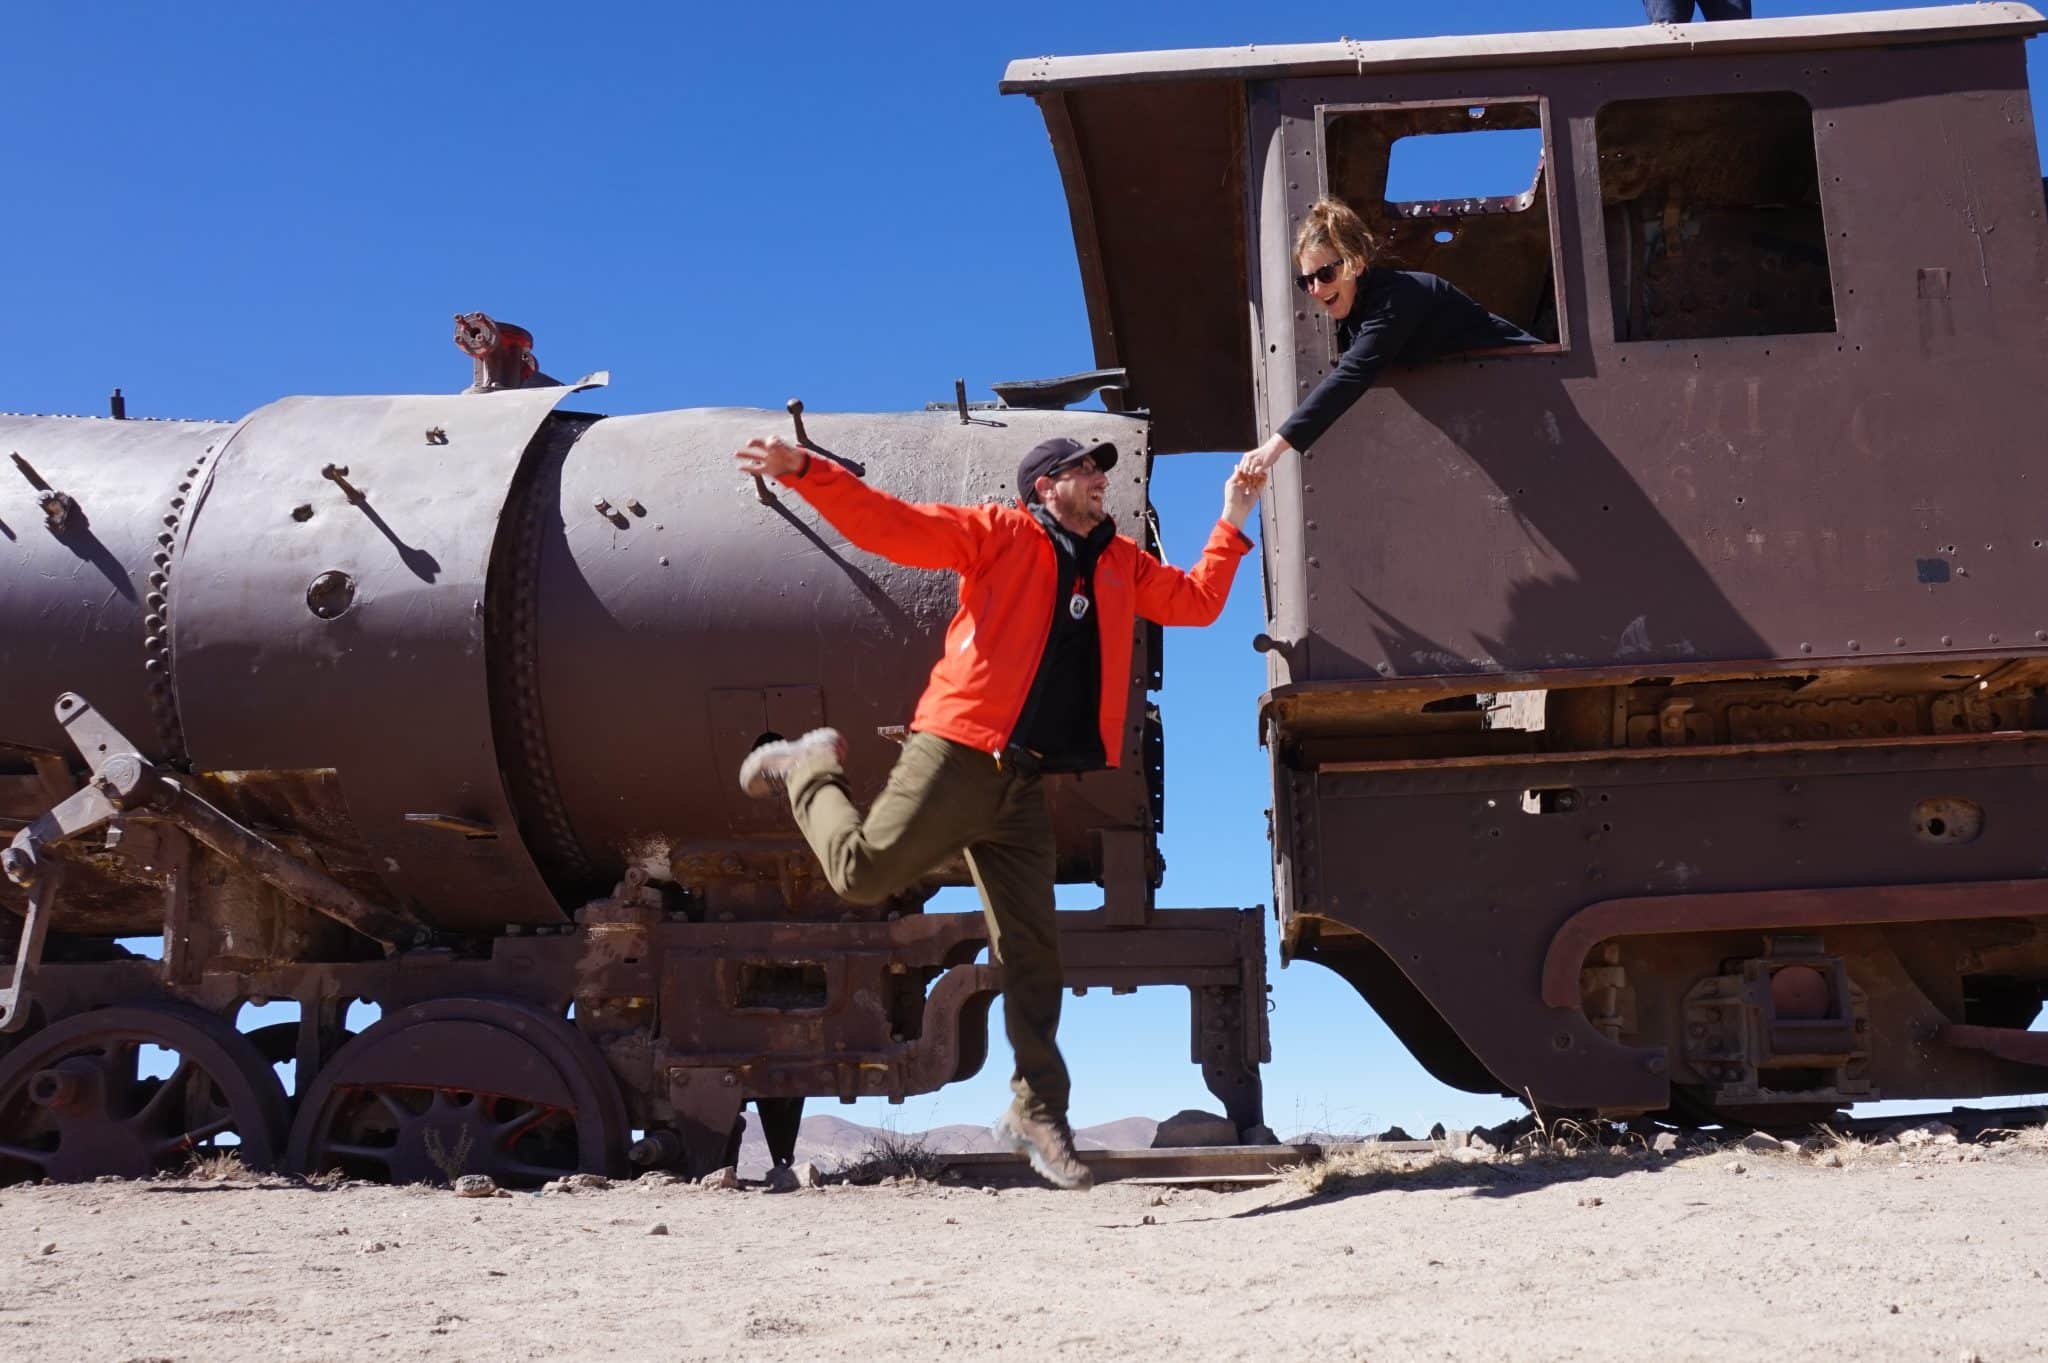 Cimetière de trains à Uyuni en Bolivie dans notre article Voyage en Bolivie : que voir et que faire en Bolivie en 5 expériences incroyables #Bolivie #Voyage #AmériqueduSud #IncontournablesBolivie #QueVoirBolivie